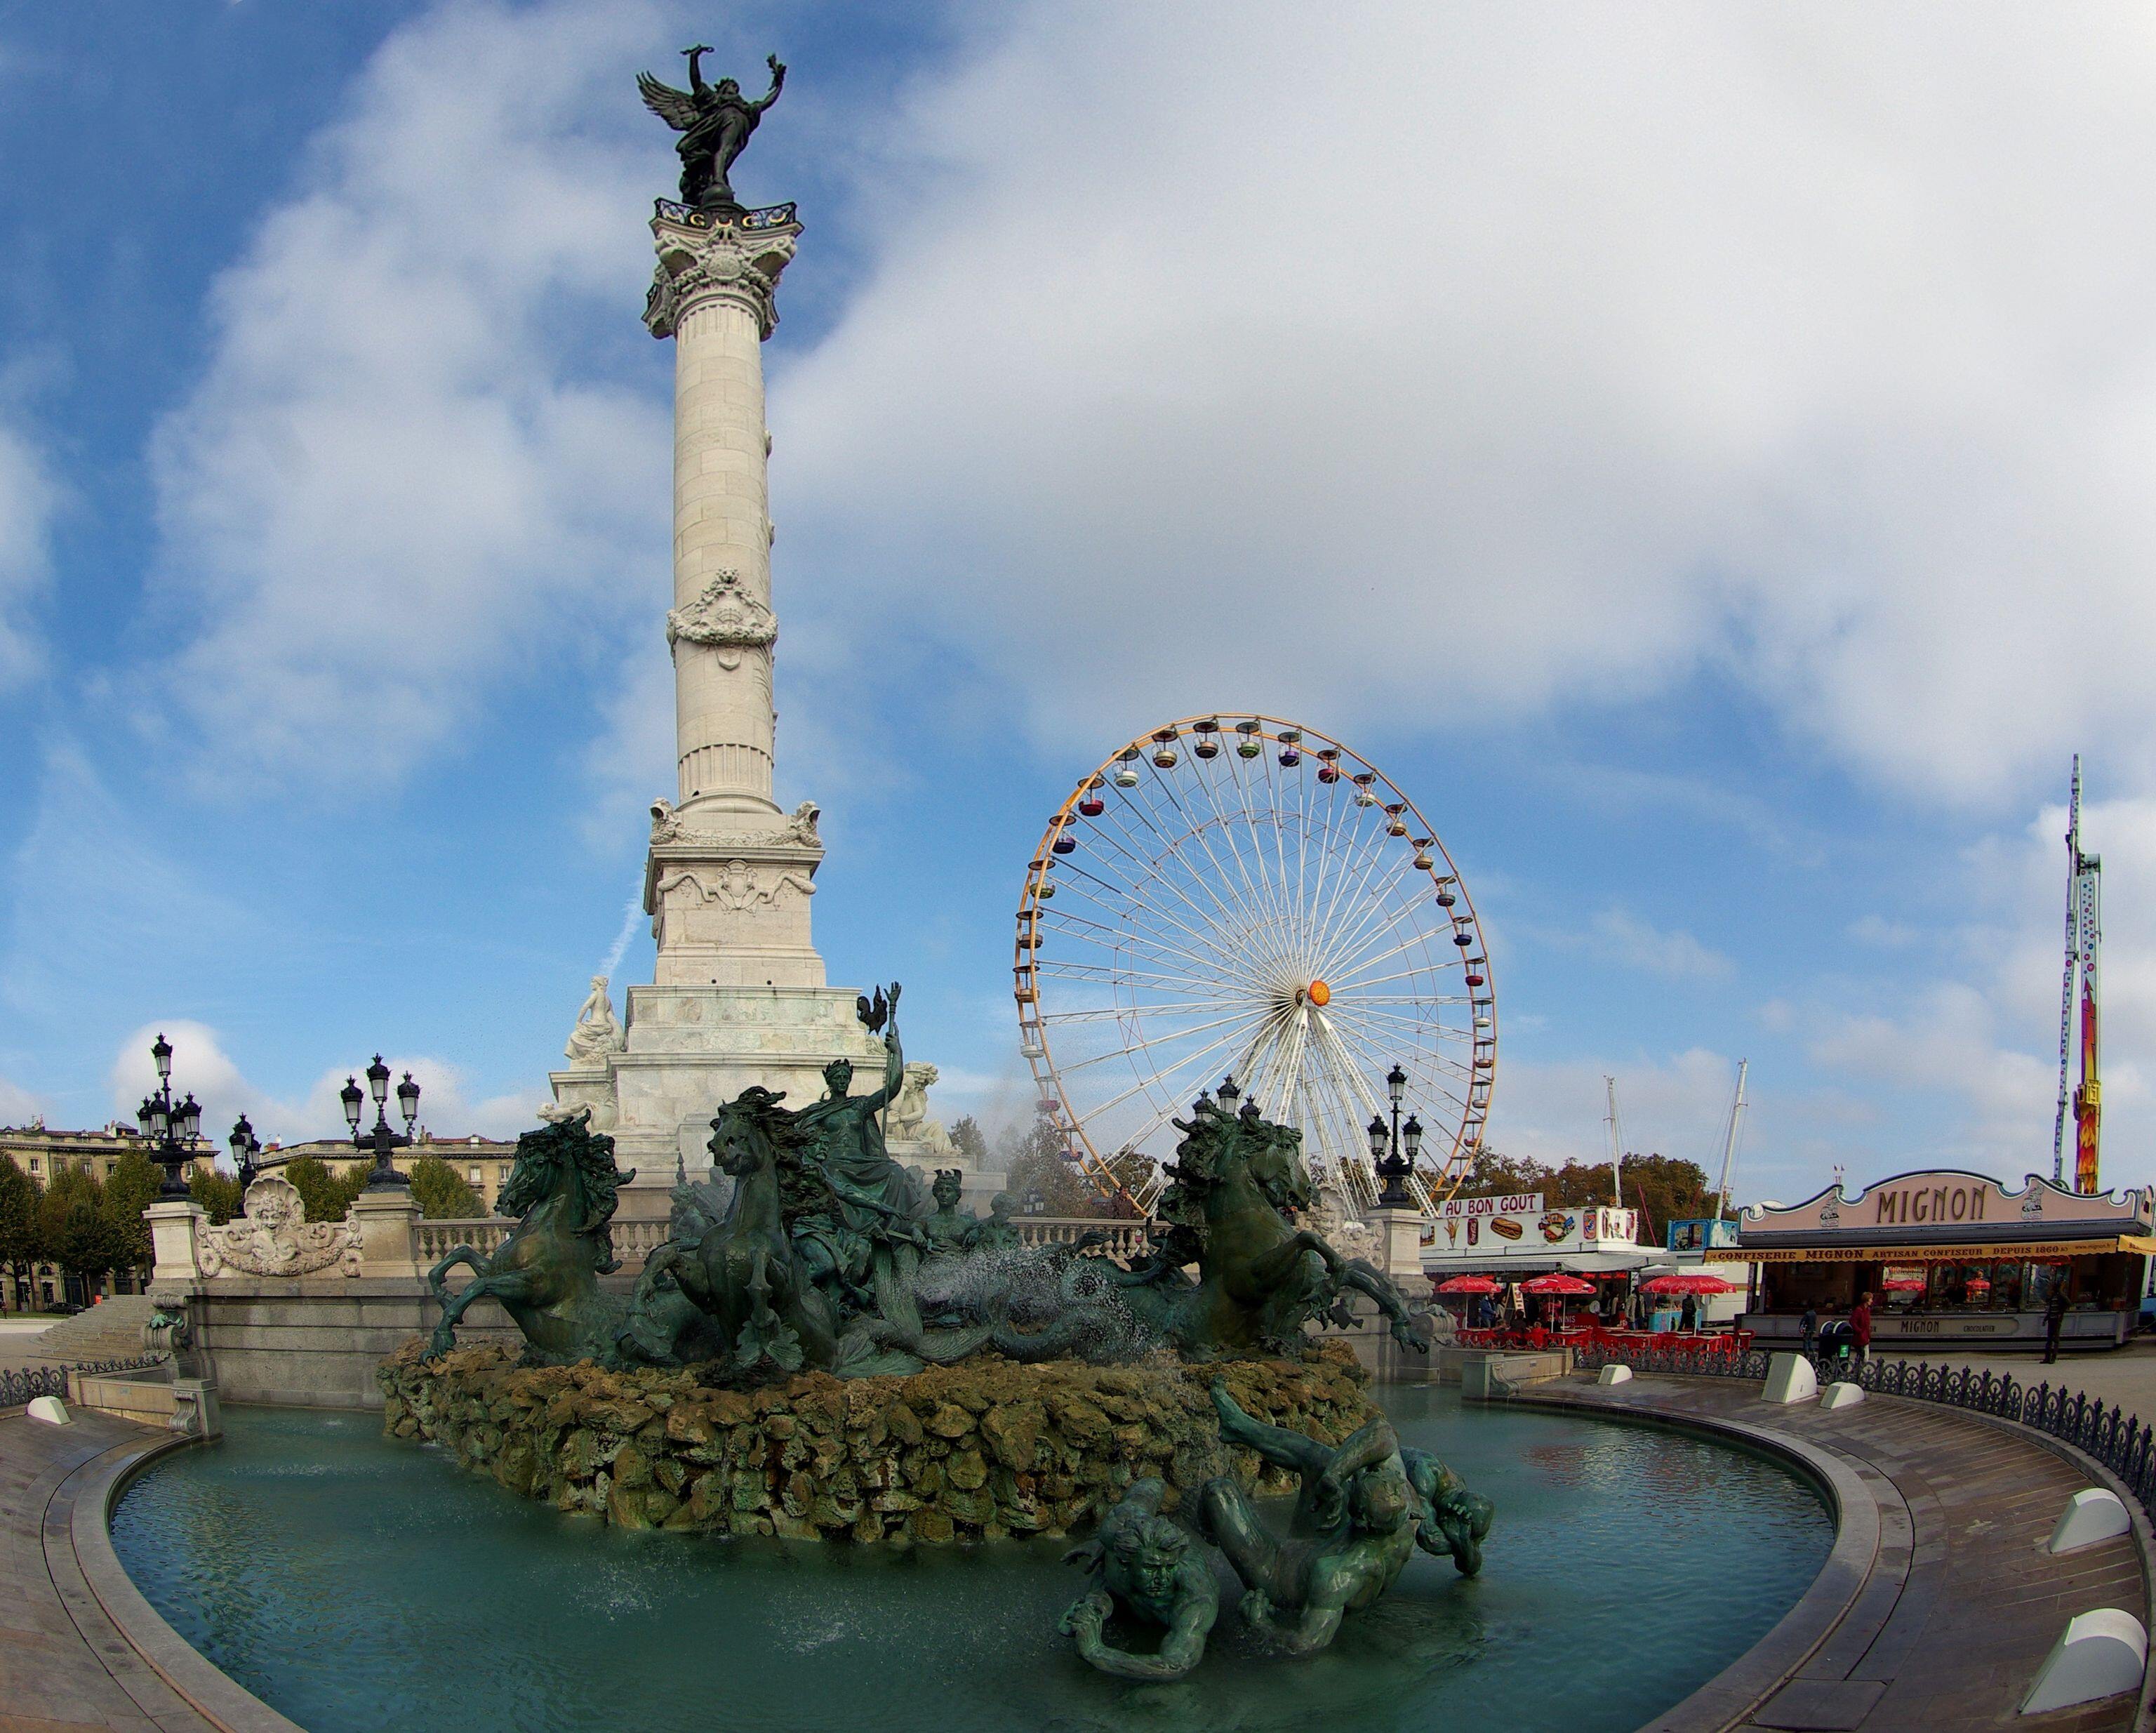 Grande roue (Ferris wheel) de la Foire aux Plaisirs, Place des Quinconces, Bordeaux, France